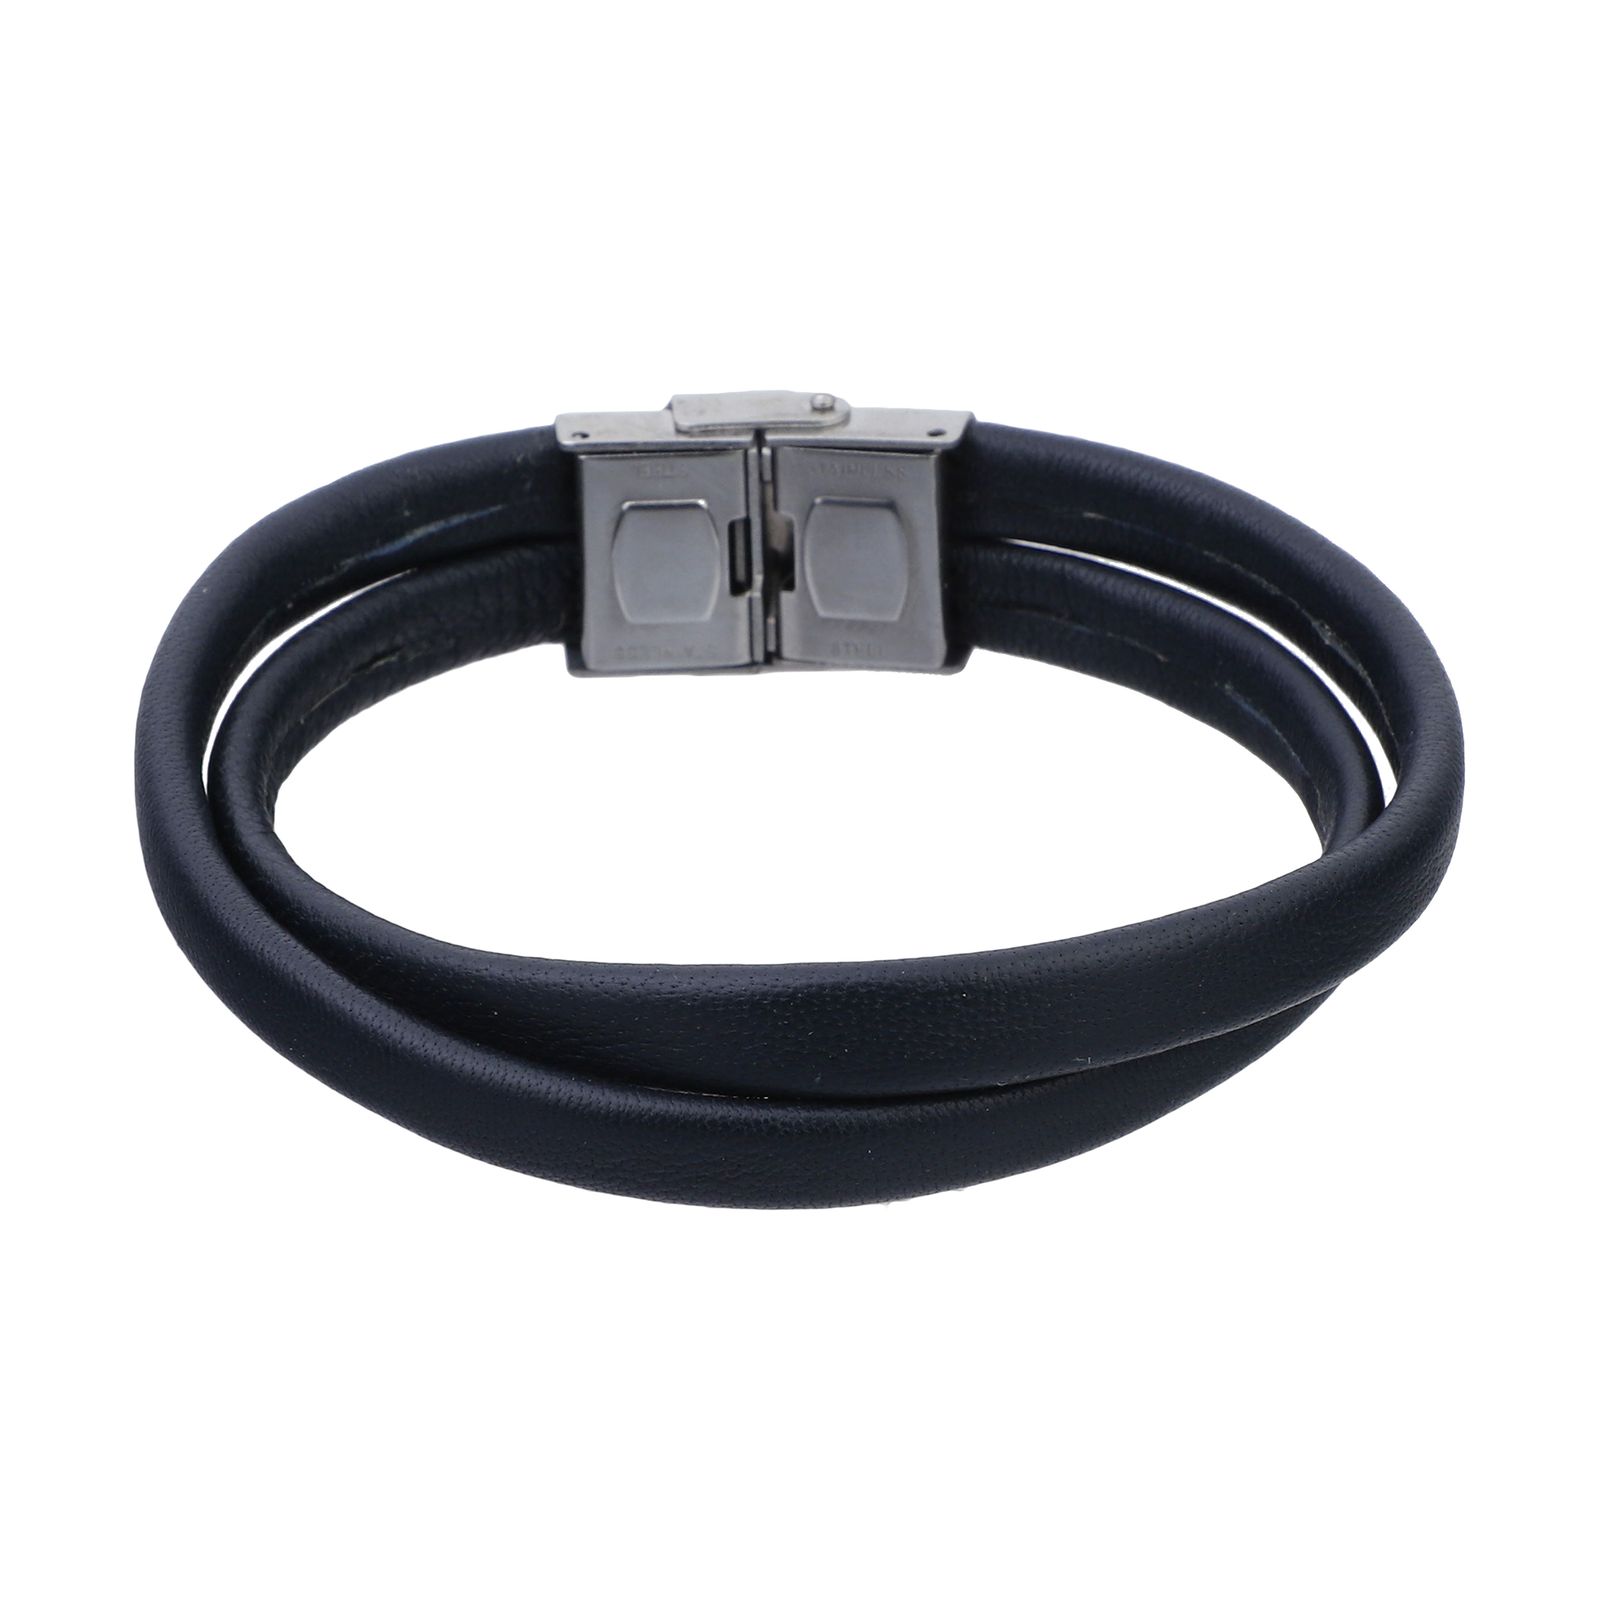 دستبند چرم لانکا مدل 6035 -  - 1